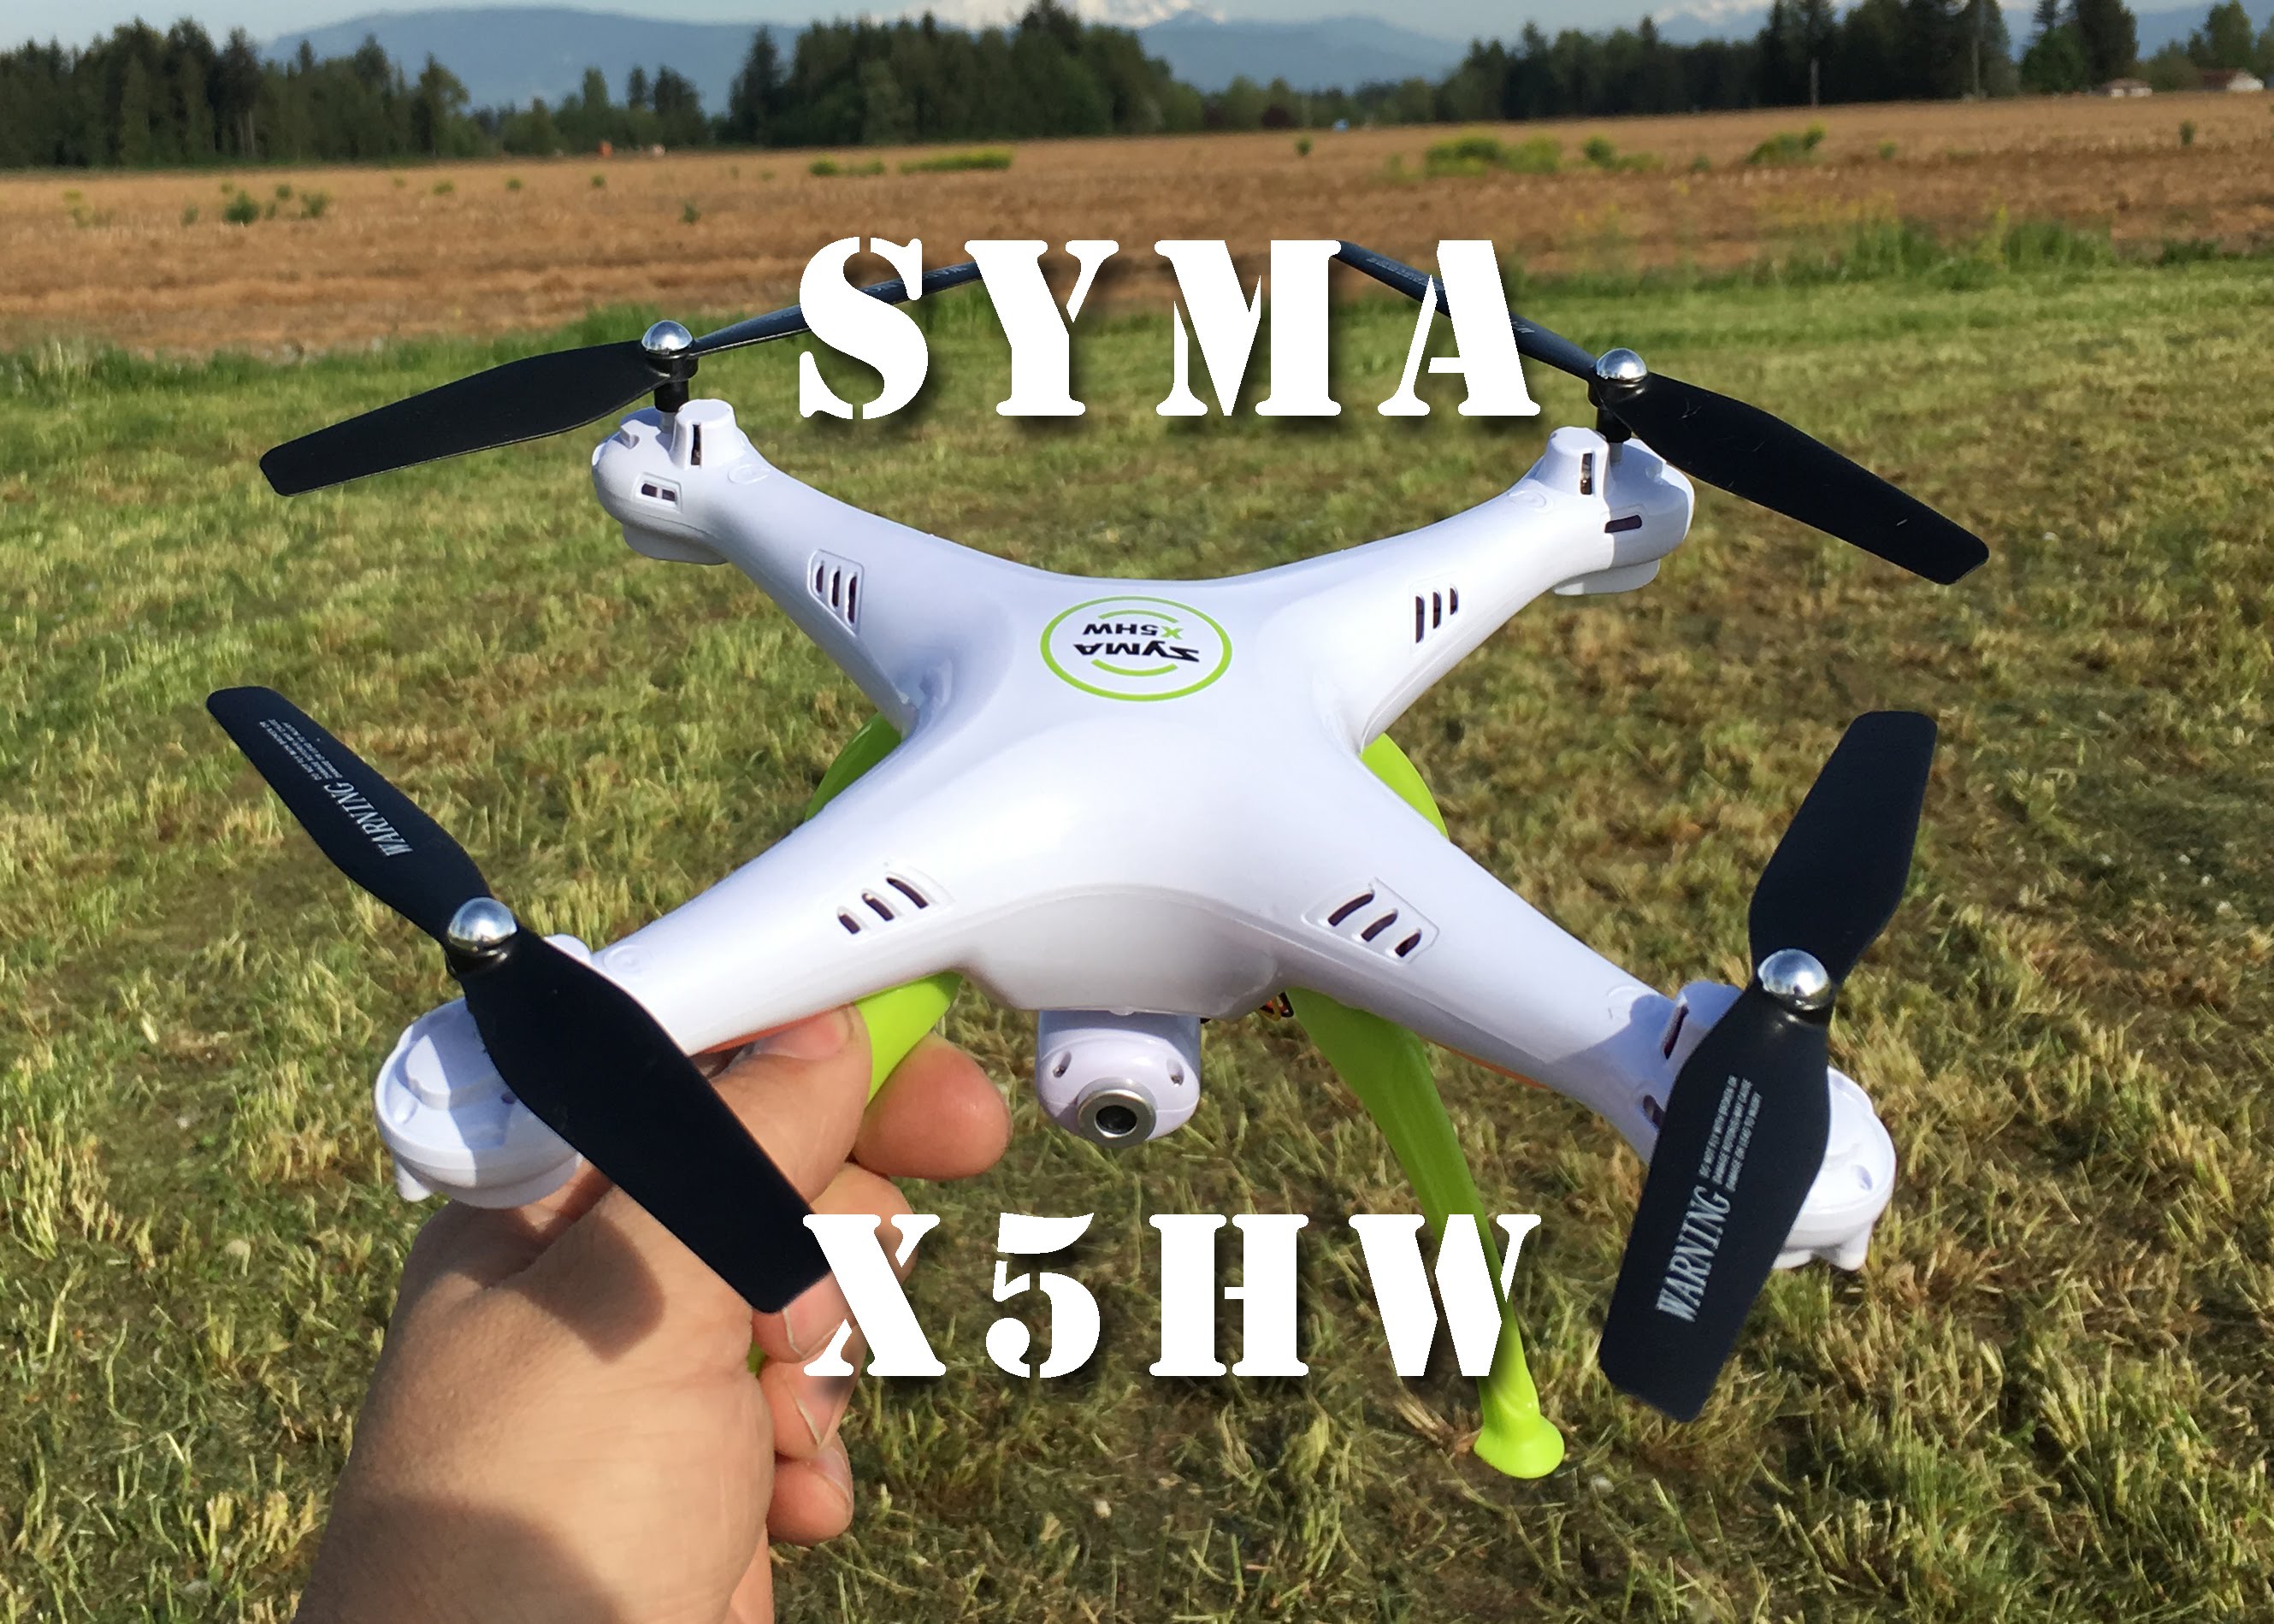 Syma’s X5HW Camera/Wifi Auto Hover Quadcopter Drone Flight Review PT2